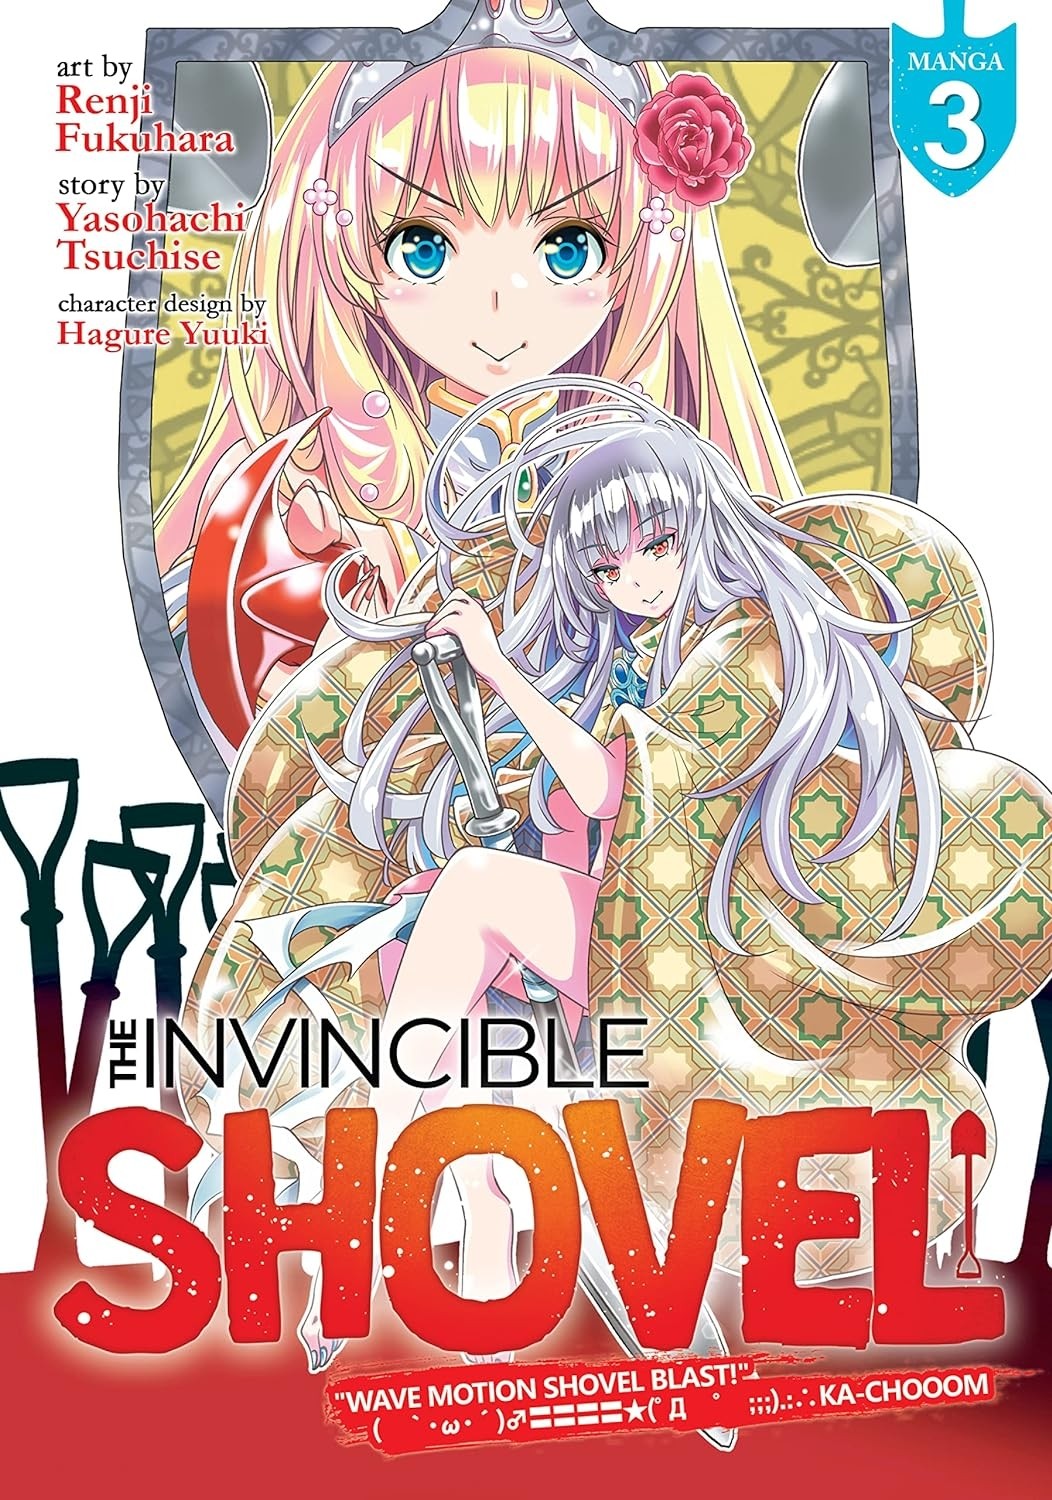 The Invincible Shovel, Vol. 03